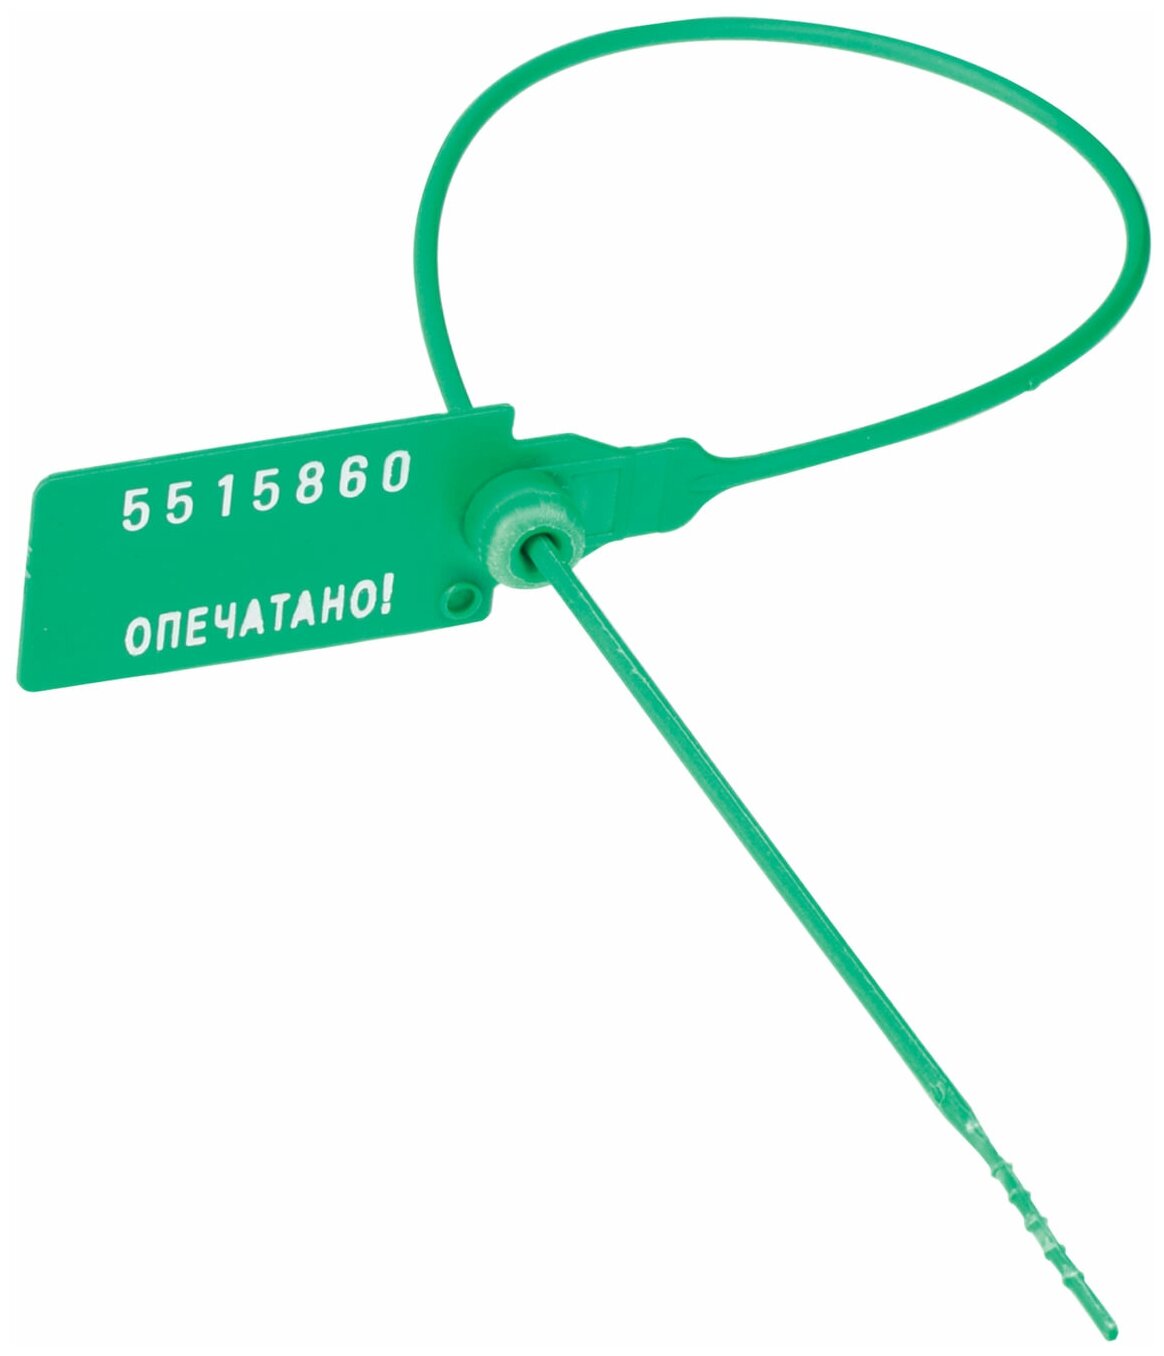 Пломбы номерные спецконтроль пластиковые, самофиксирующиеся, 220 мм, зеленые, 50 шт